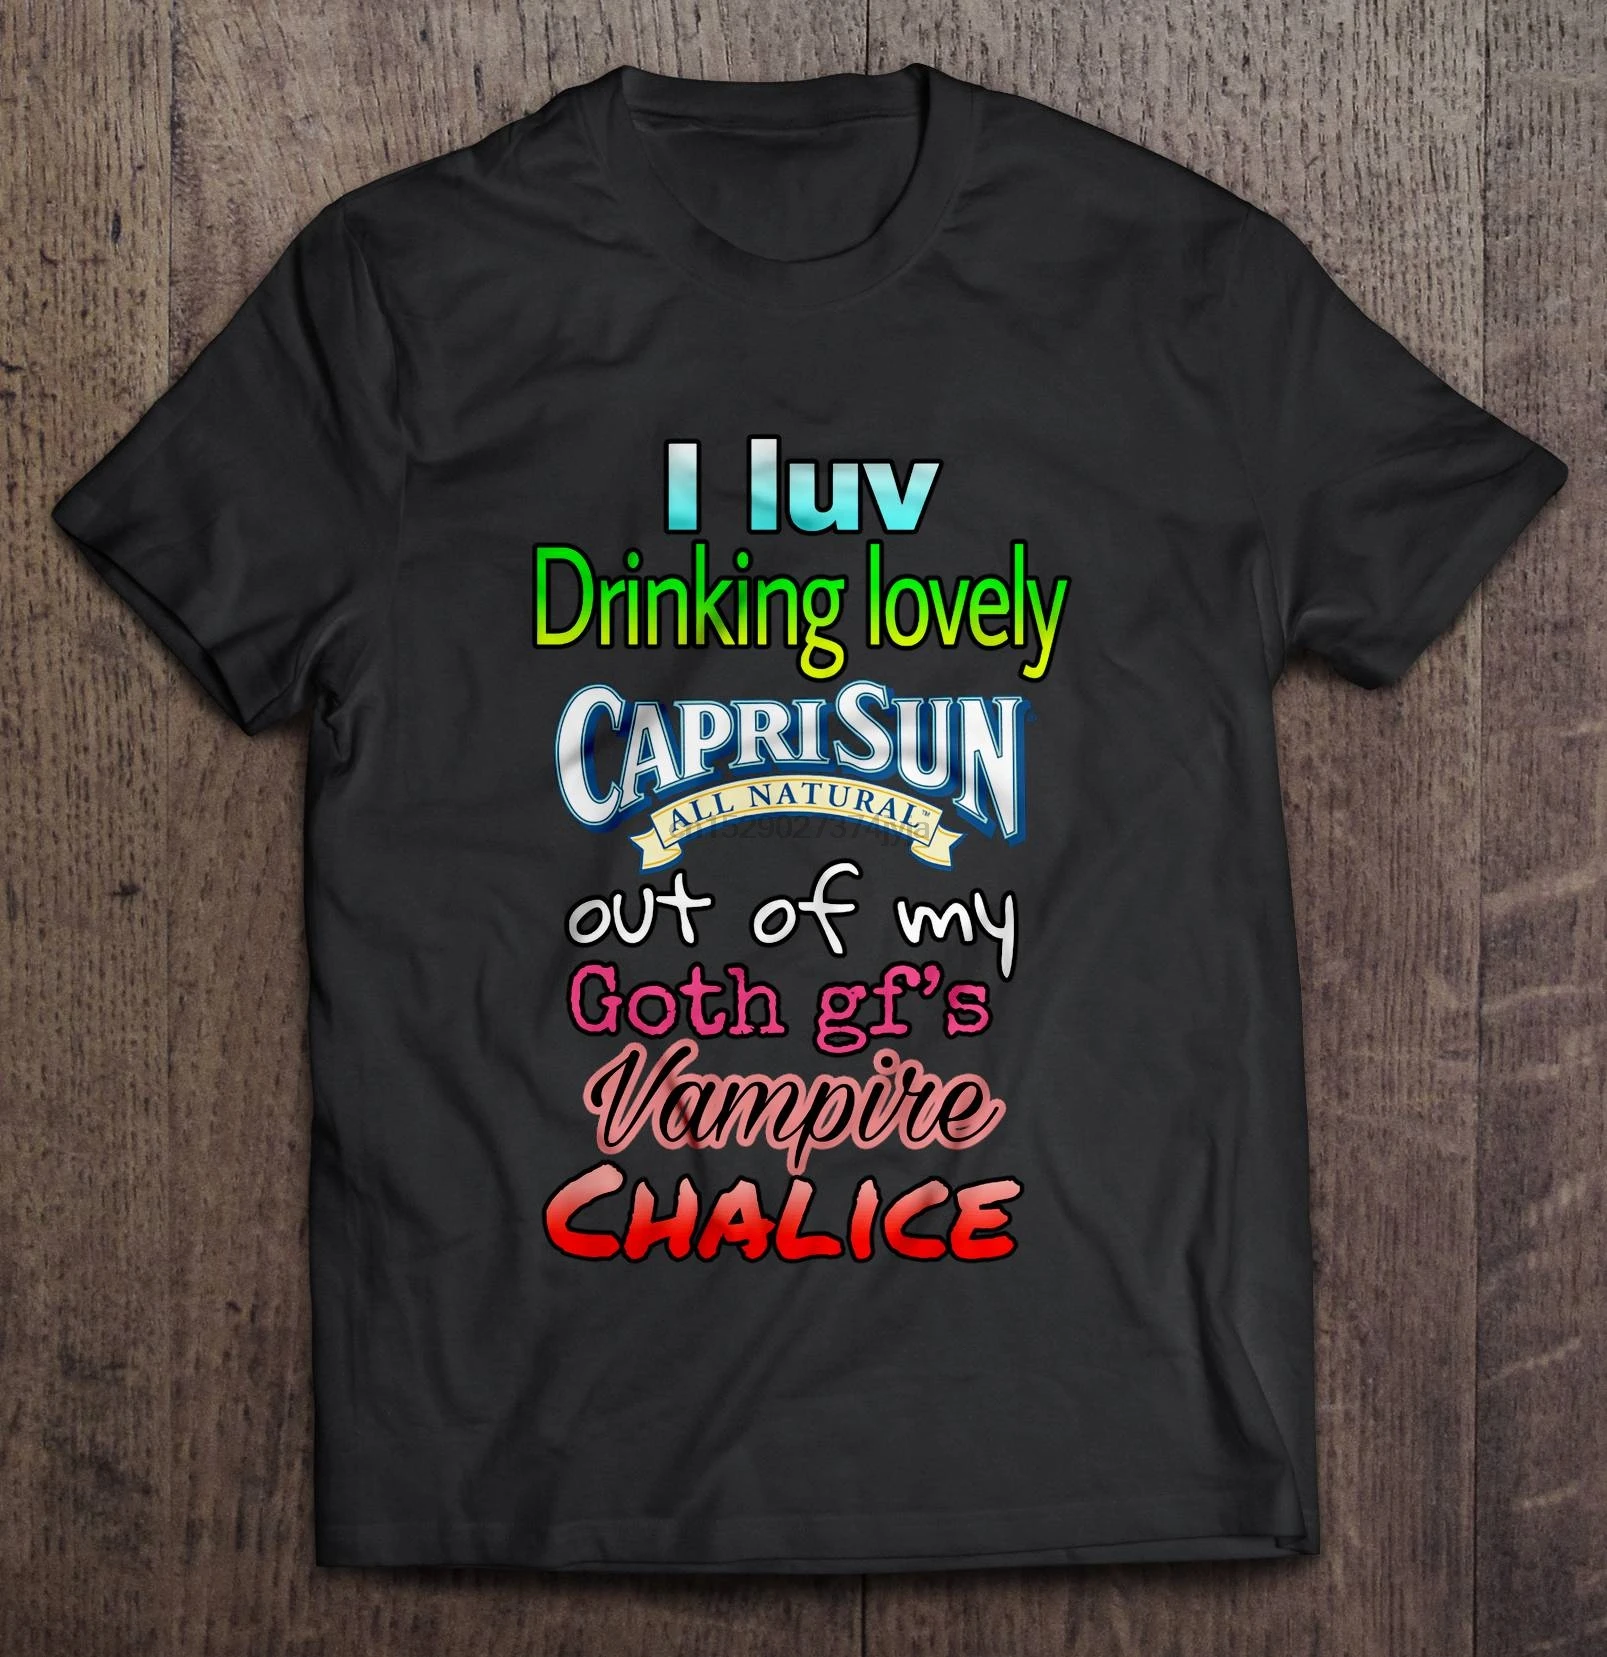 Erkekler Komik T Shirt Moda T Shirt I Luv Içme Güzel Capri Sun Tüm Doğal  Dışında Benim Goth Gf'sVampire Kadeh kadın t shirt| | - AliExpress